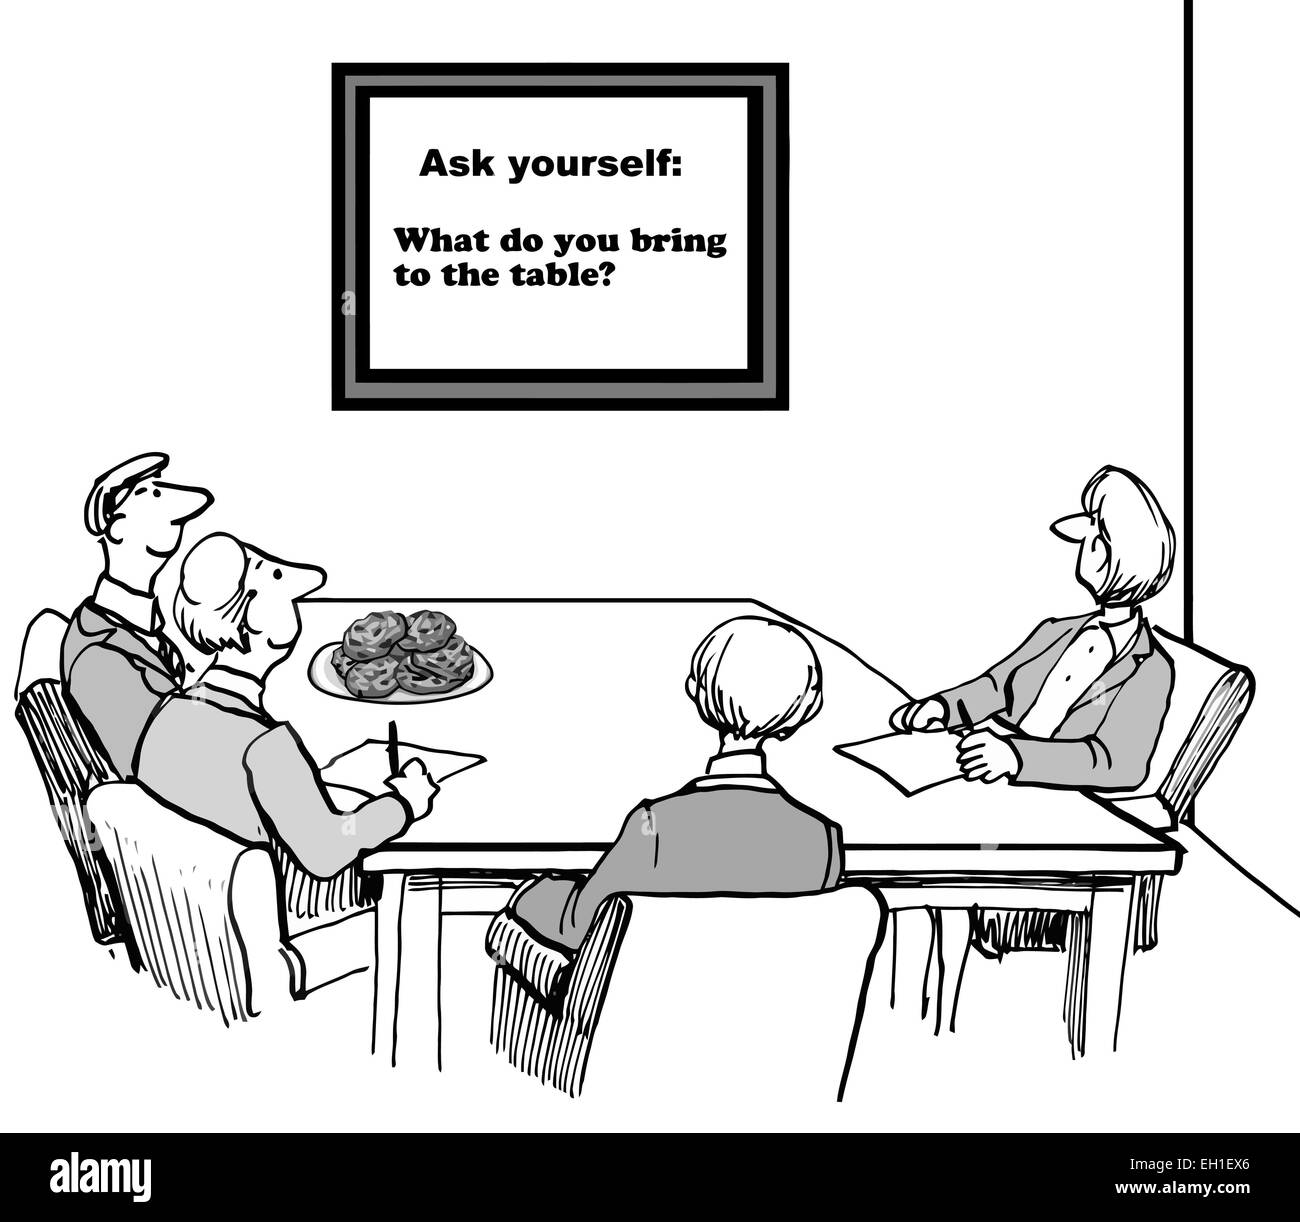 Cartoon von Geschäftsleuten, die persönliche und berufliche Verantwortung in Frage zu stellen: Fragen Sie sich, was Sie an den Tisch bringen? Stock Vektor